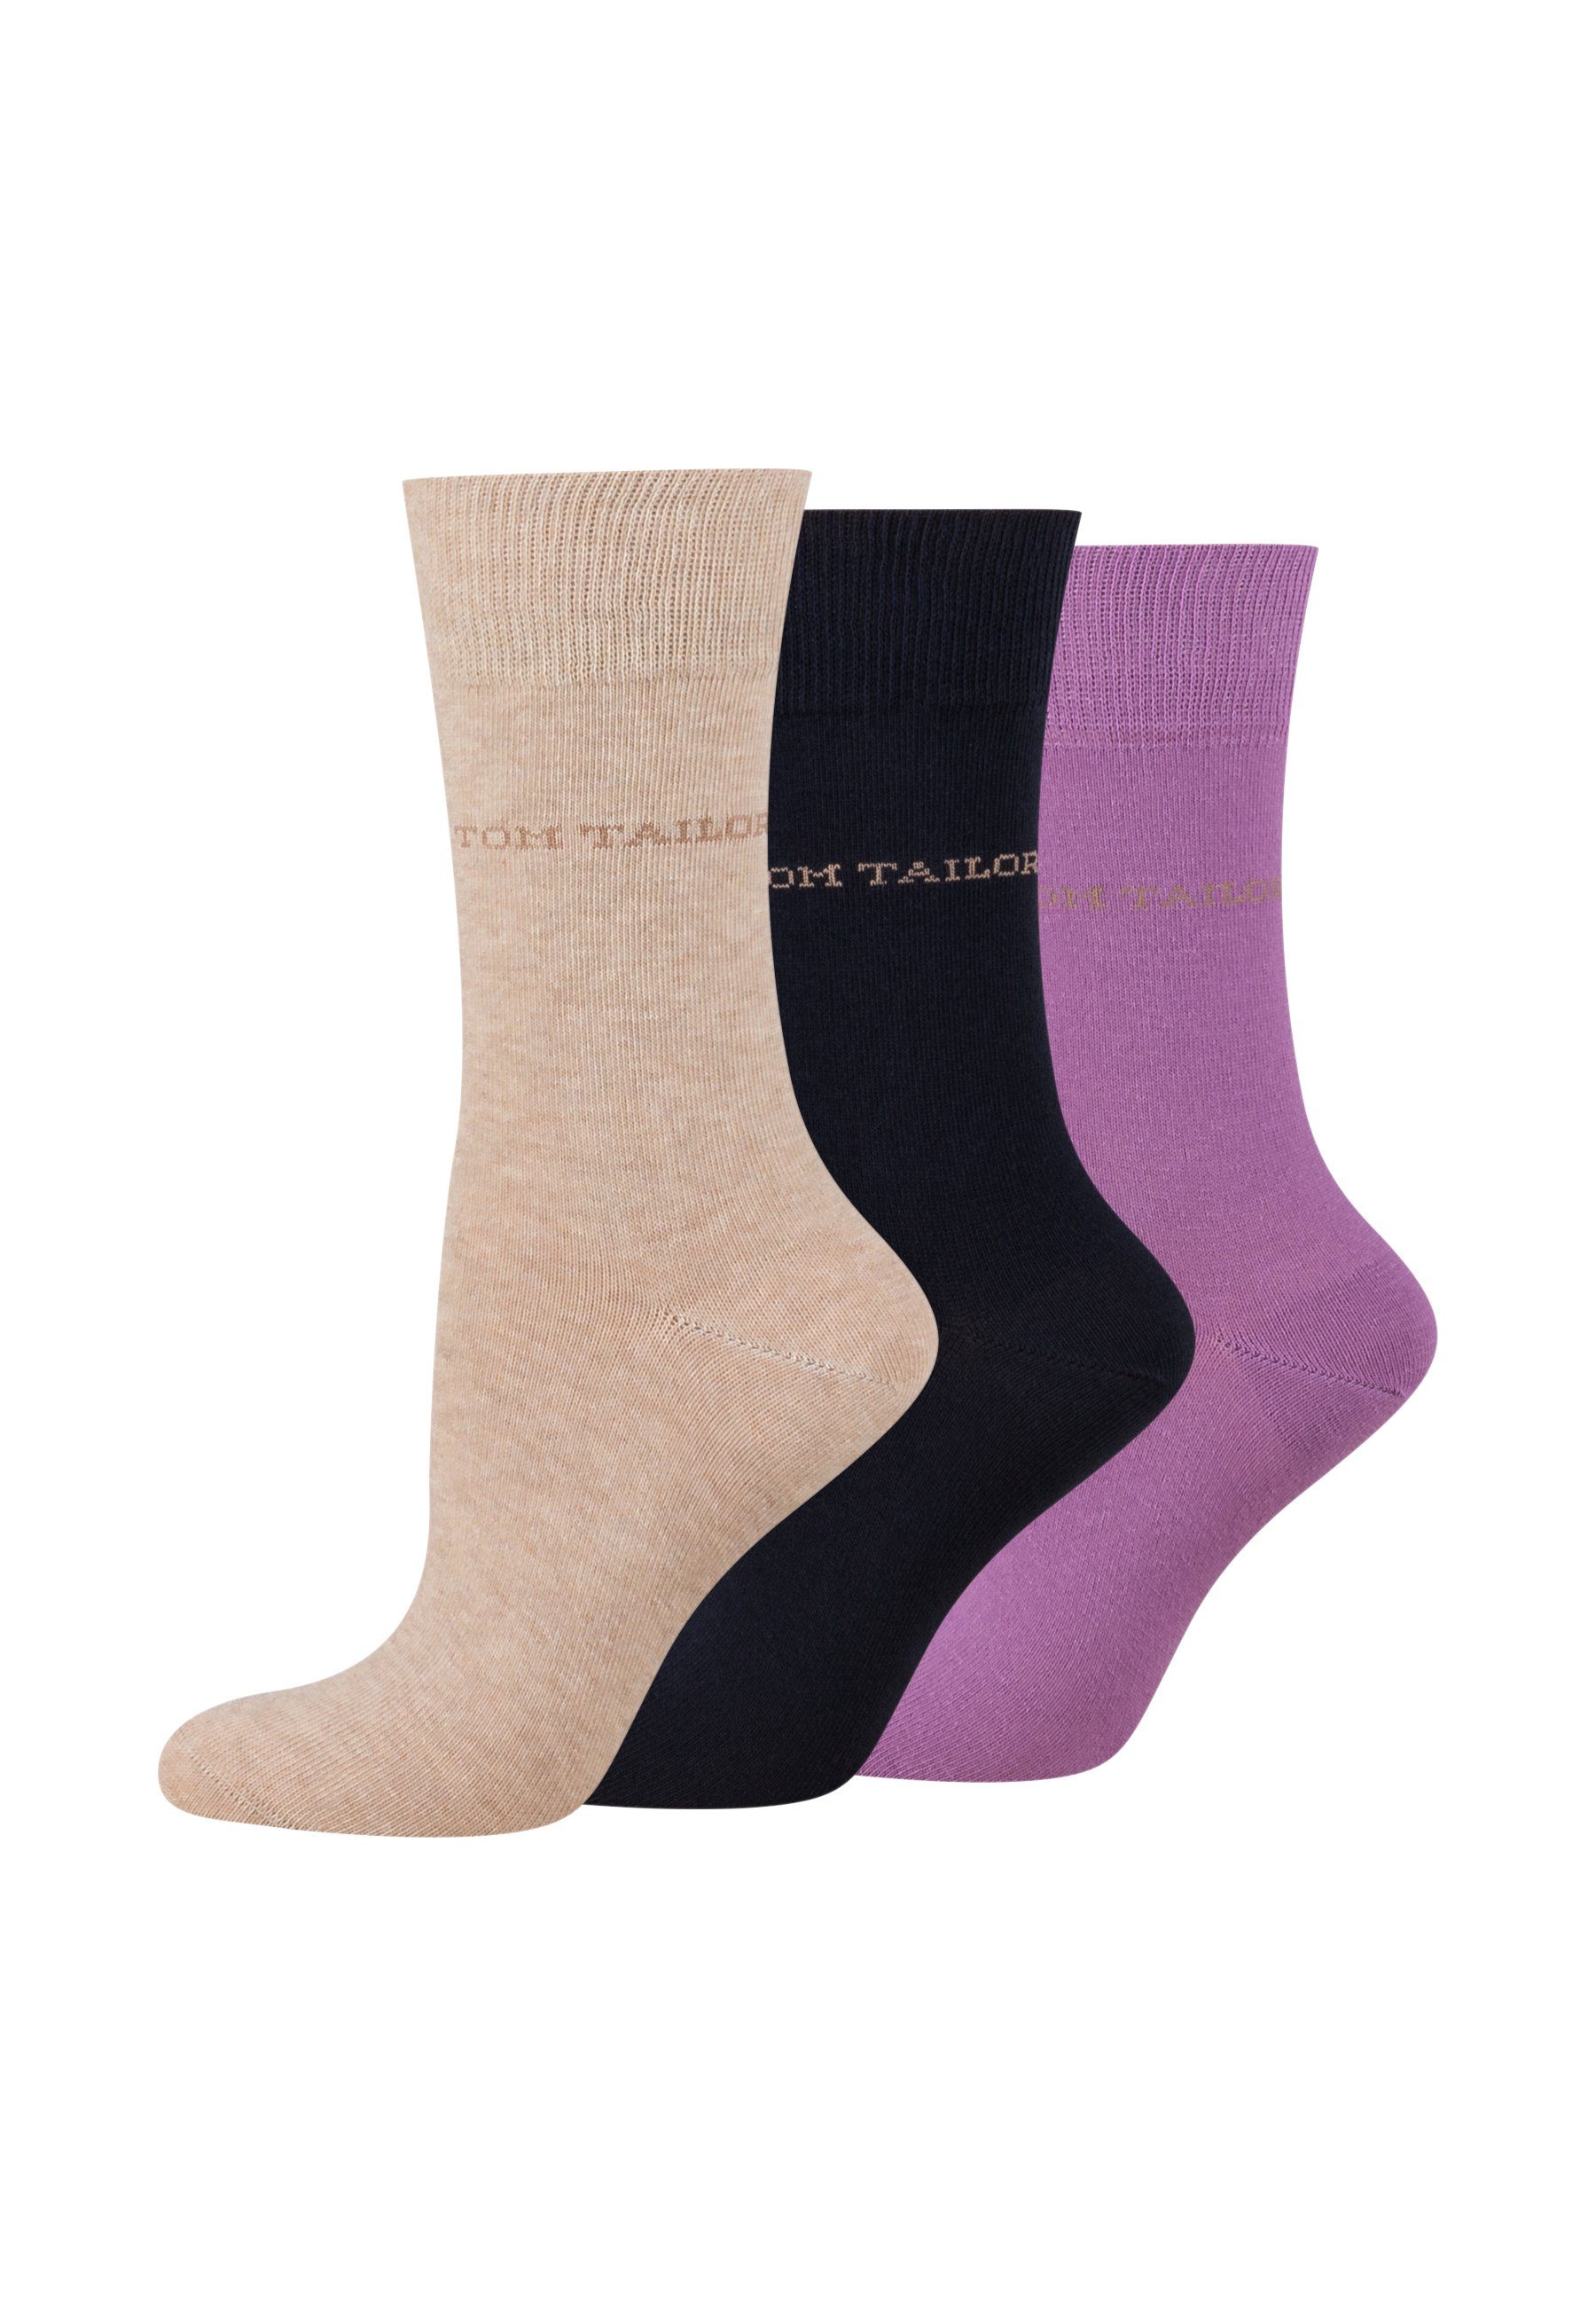 TOM TAILOR Socken 9609791038 TOM TAILOR Socken Damen – Baumwollsocken für Alltag und Freizeit